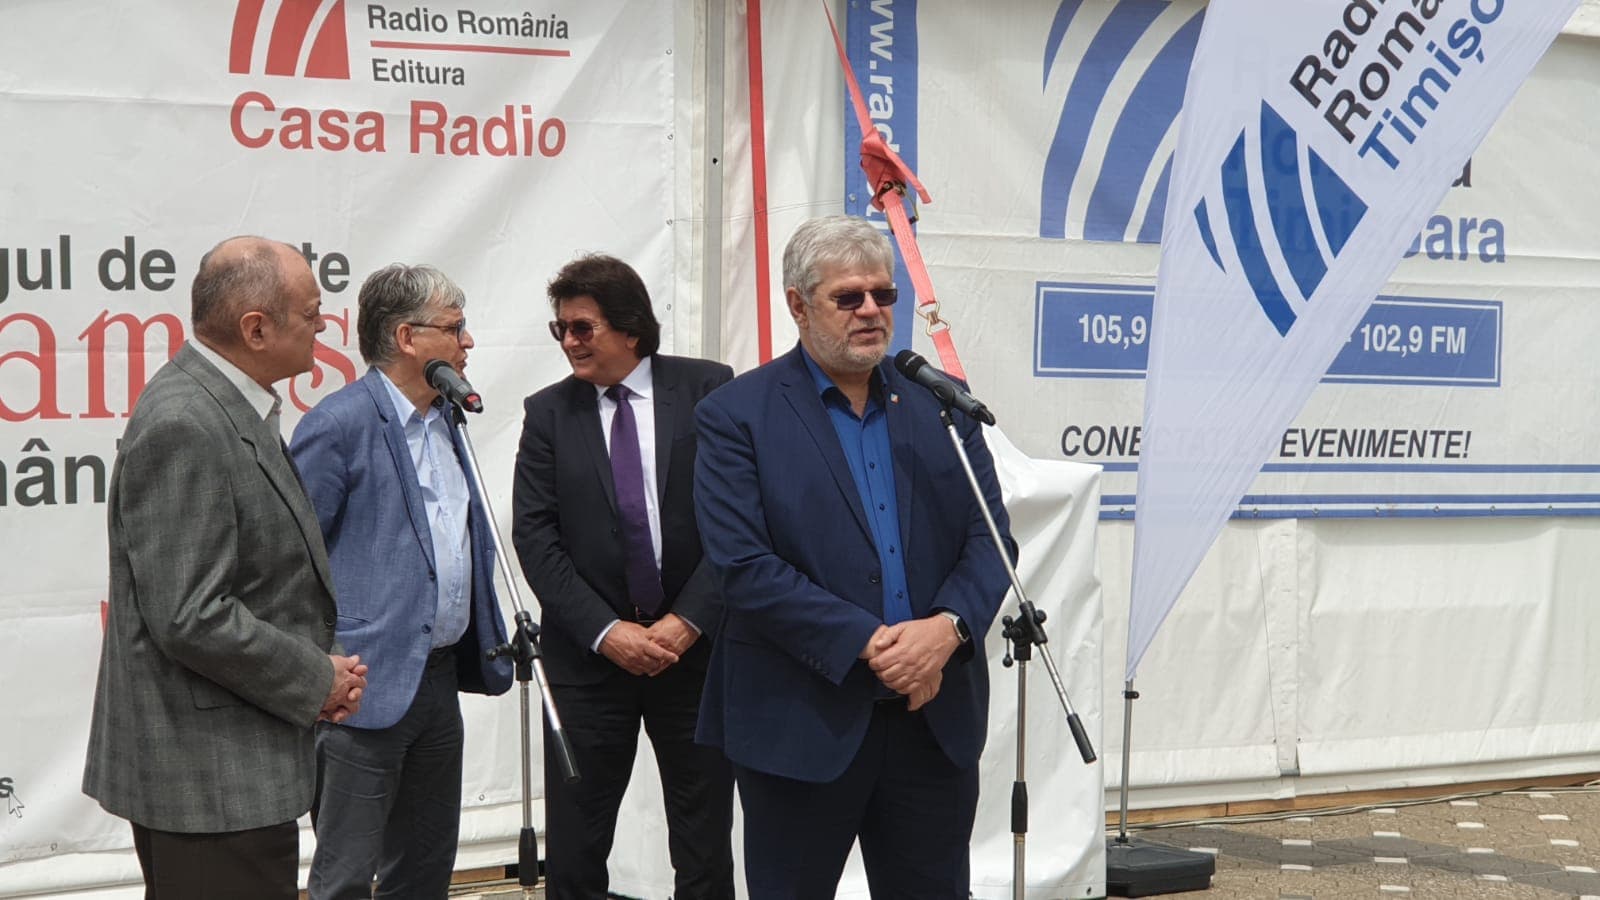 FOTO/ VIDEO/ S-a deschis cel mai mare târg de carte Gaudeamus Radio România de la Timișoara